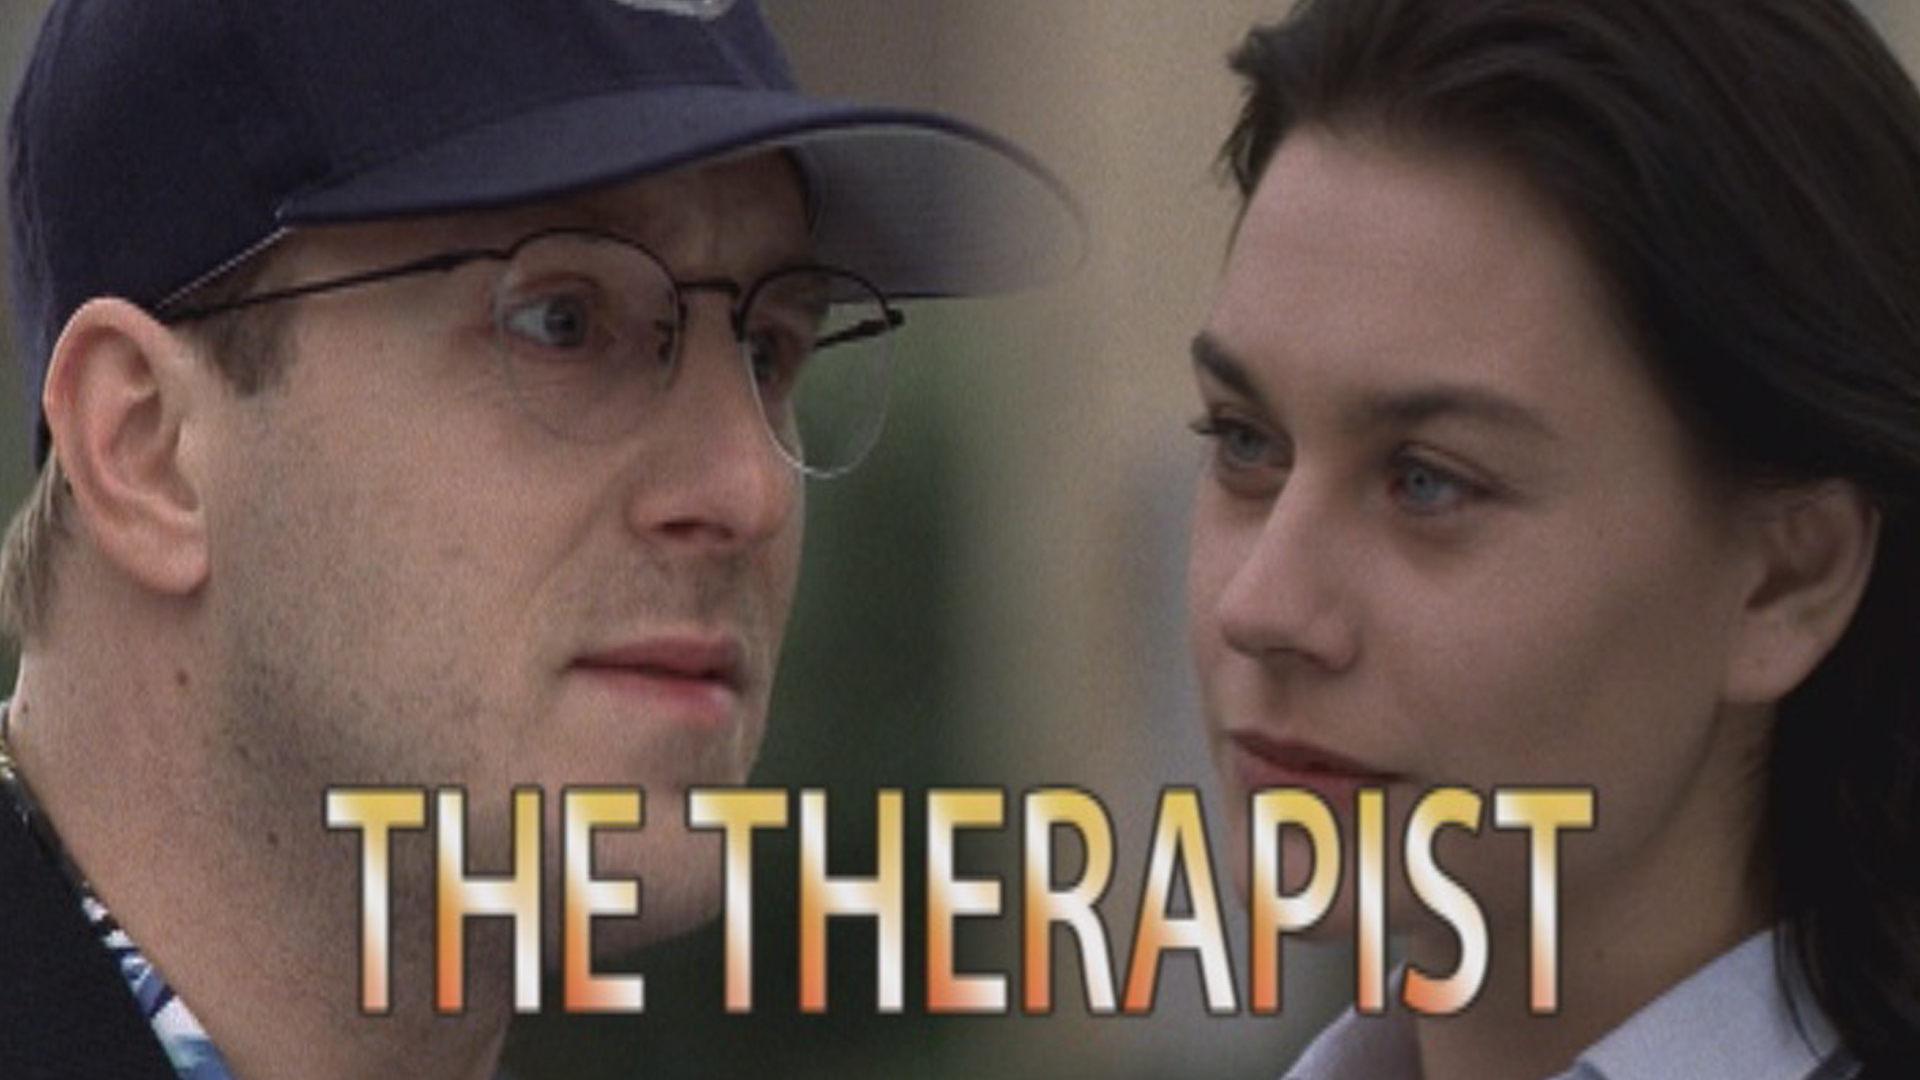 小丑尼克(普通话版)
		
	
    
        The Therapist